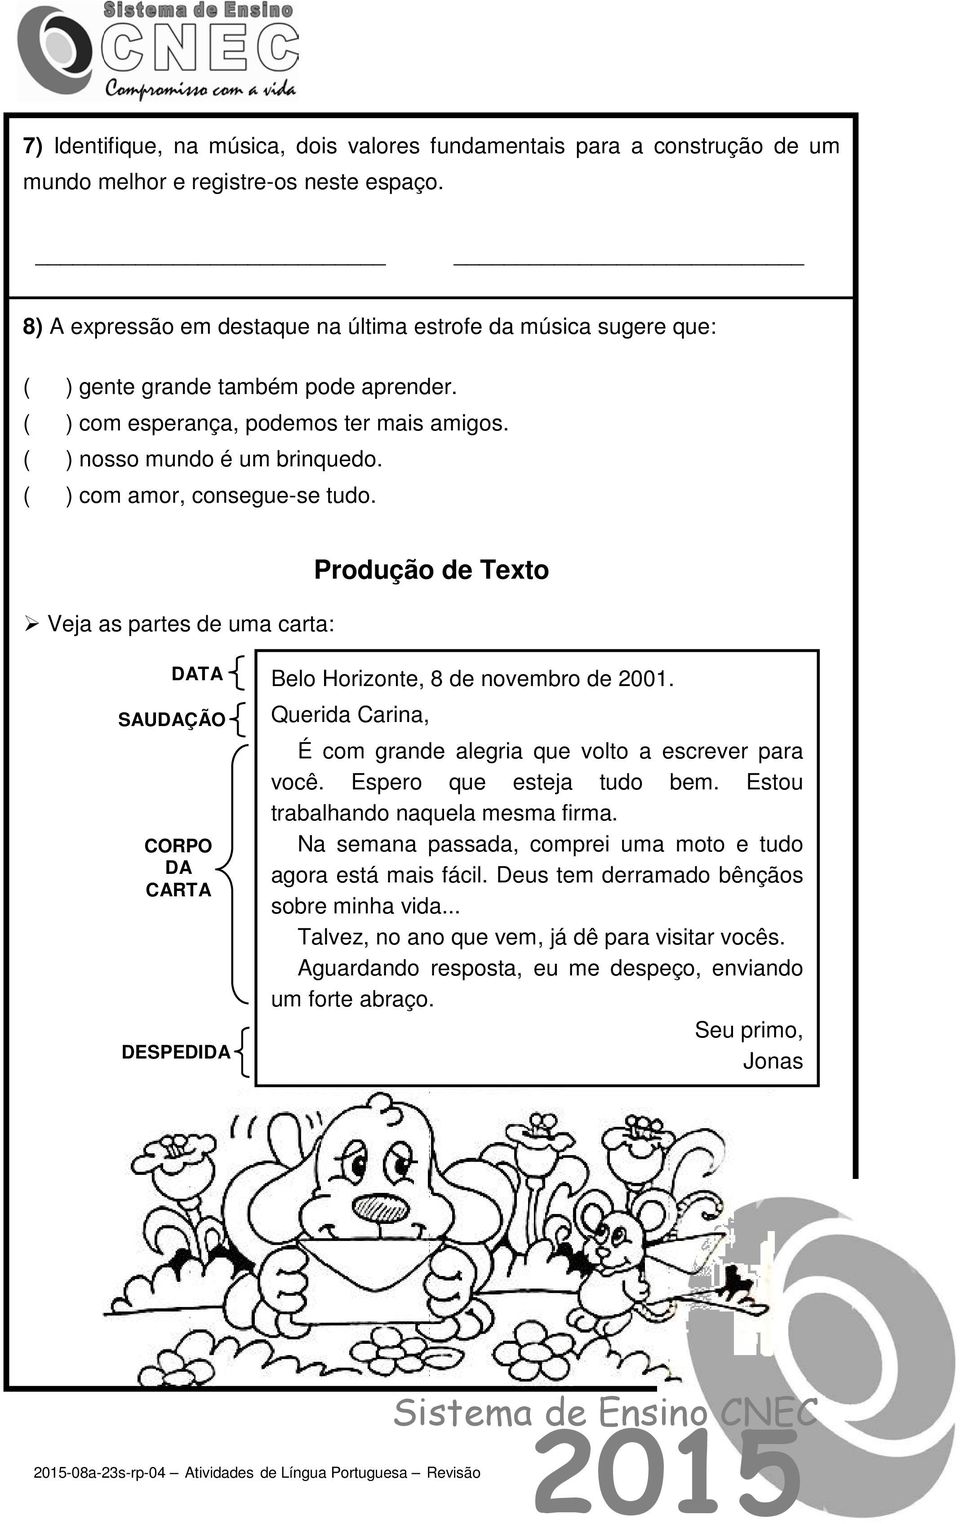 ( ) com amor, consegue-se tudo. Veja as partes de uma carta: Produção de Texto DATA SAUDAÇÃO CORPO DA CARTA DESPEDIDA Belo Horizonte, 8 de novembro de 2001.